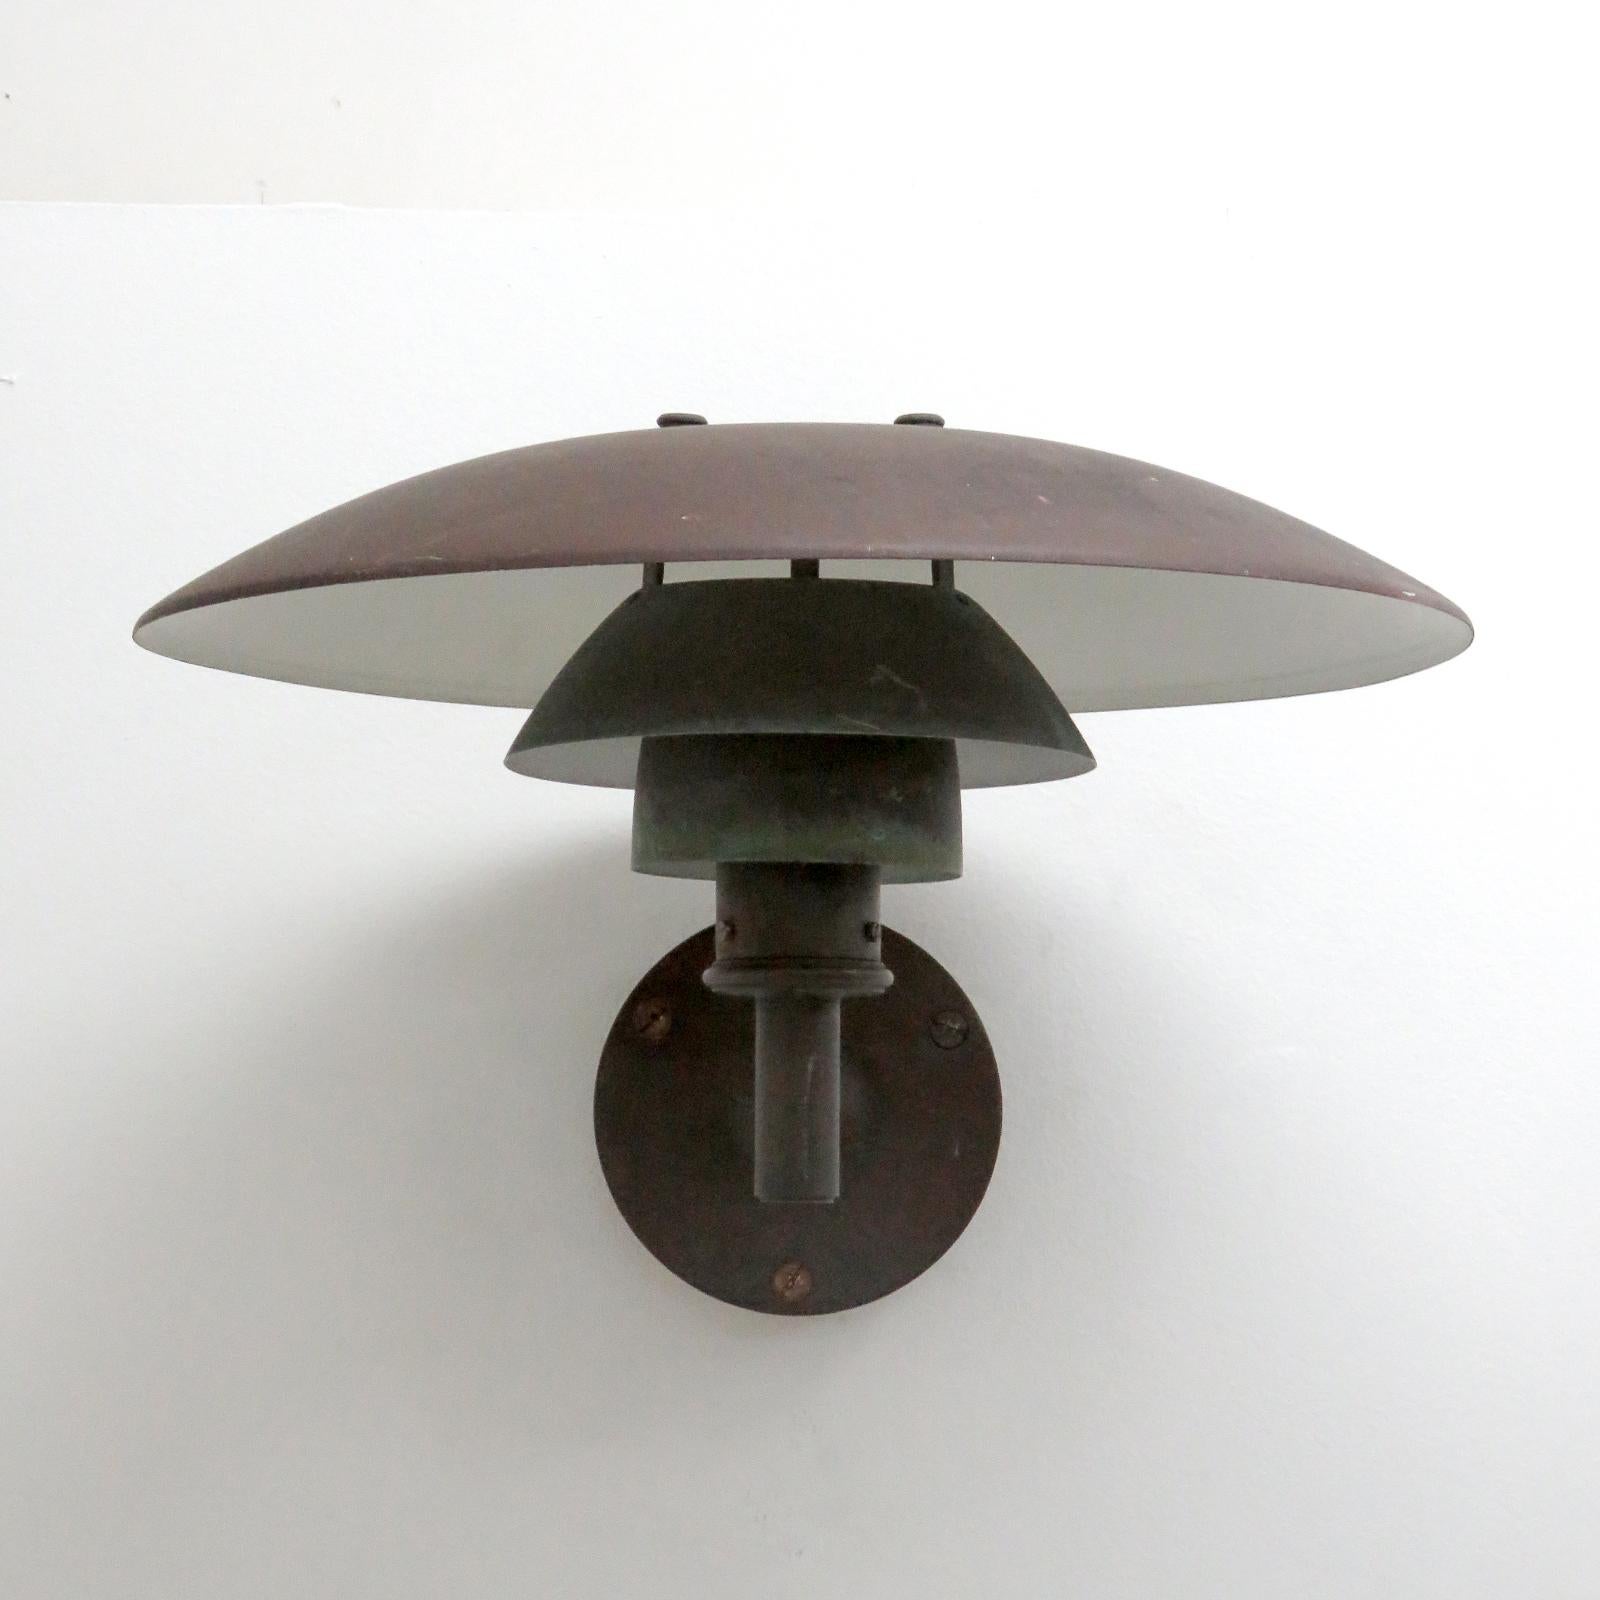 Légendaire applique d'extérieur en cuivre PH 4½/3 des années 1950 par Poul Henningsen, entièrement restaurée avec une grande partie de la patine du cuivre encore présente, câblée pour les normes américaines, une douille E27, puissance max. 100w ou